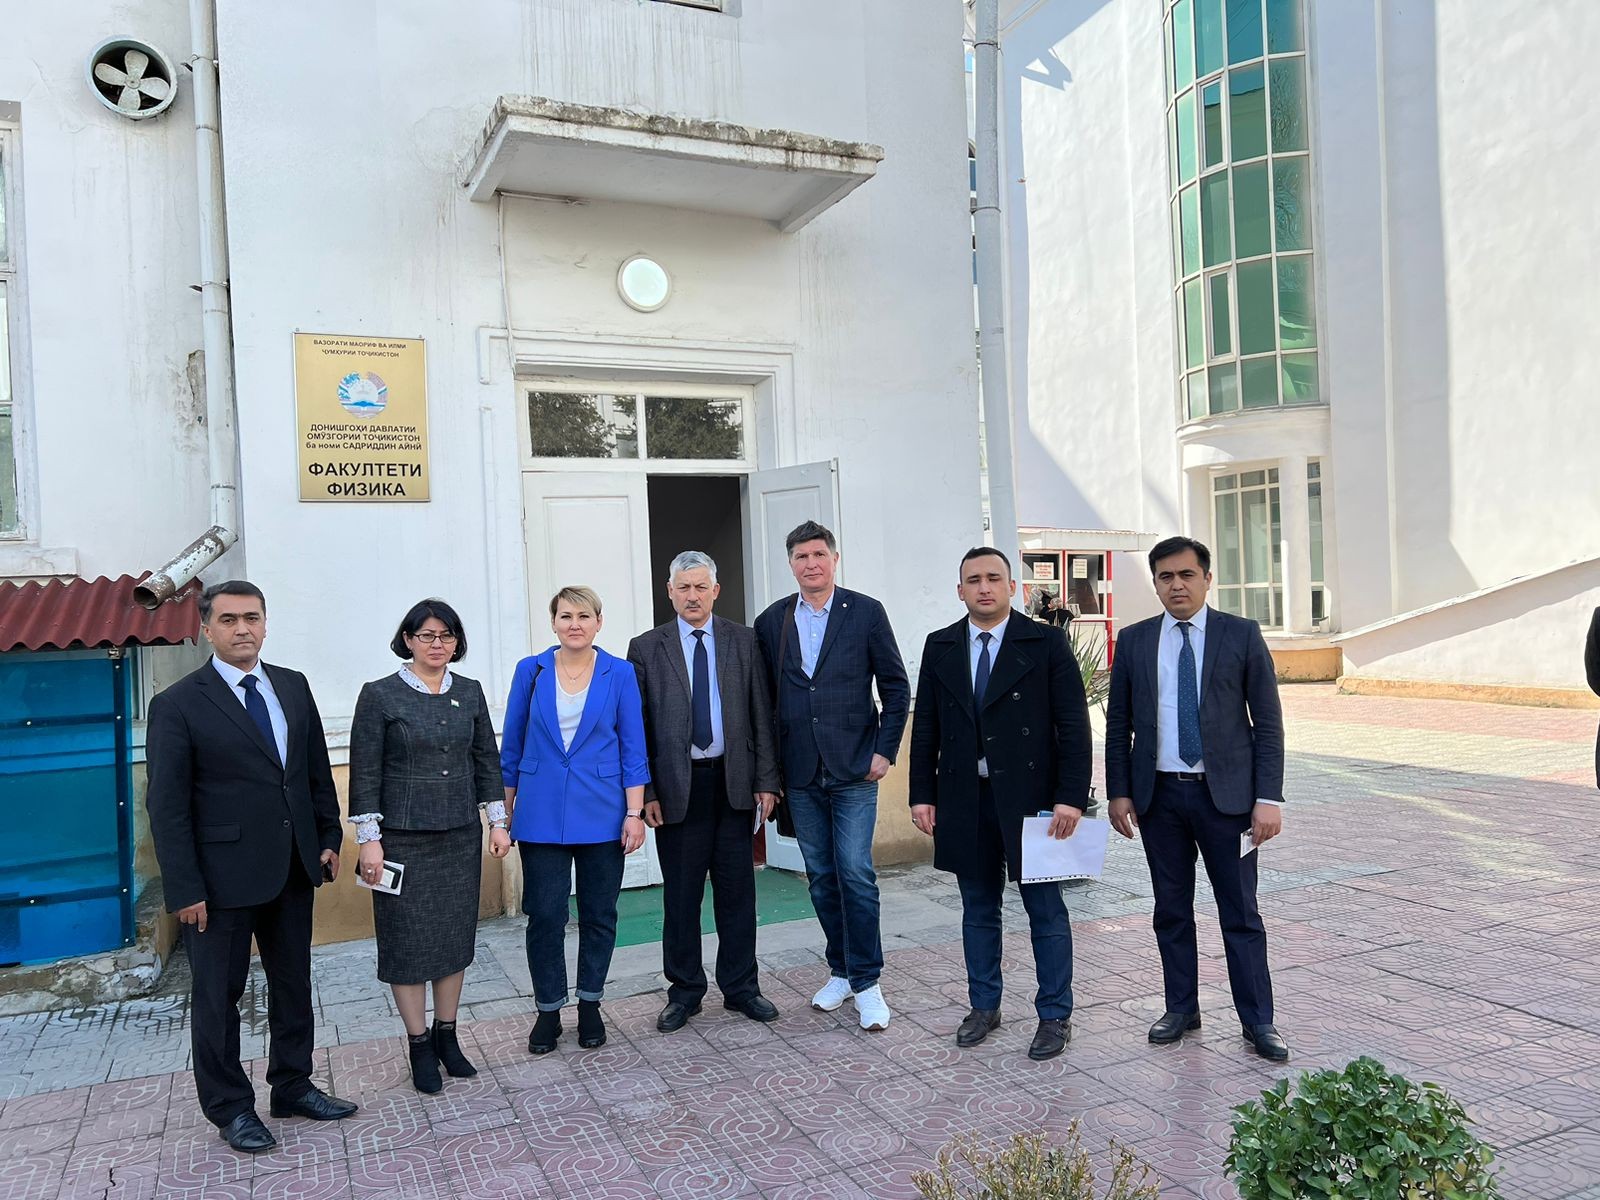 Дирекция Института физики посетила республику Таджикистан! ,КФУ, Институт физики, визит